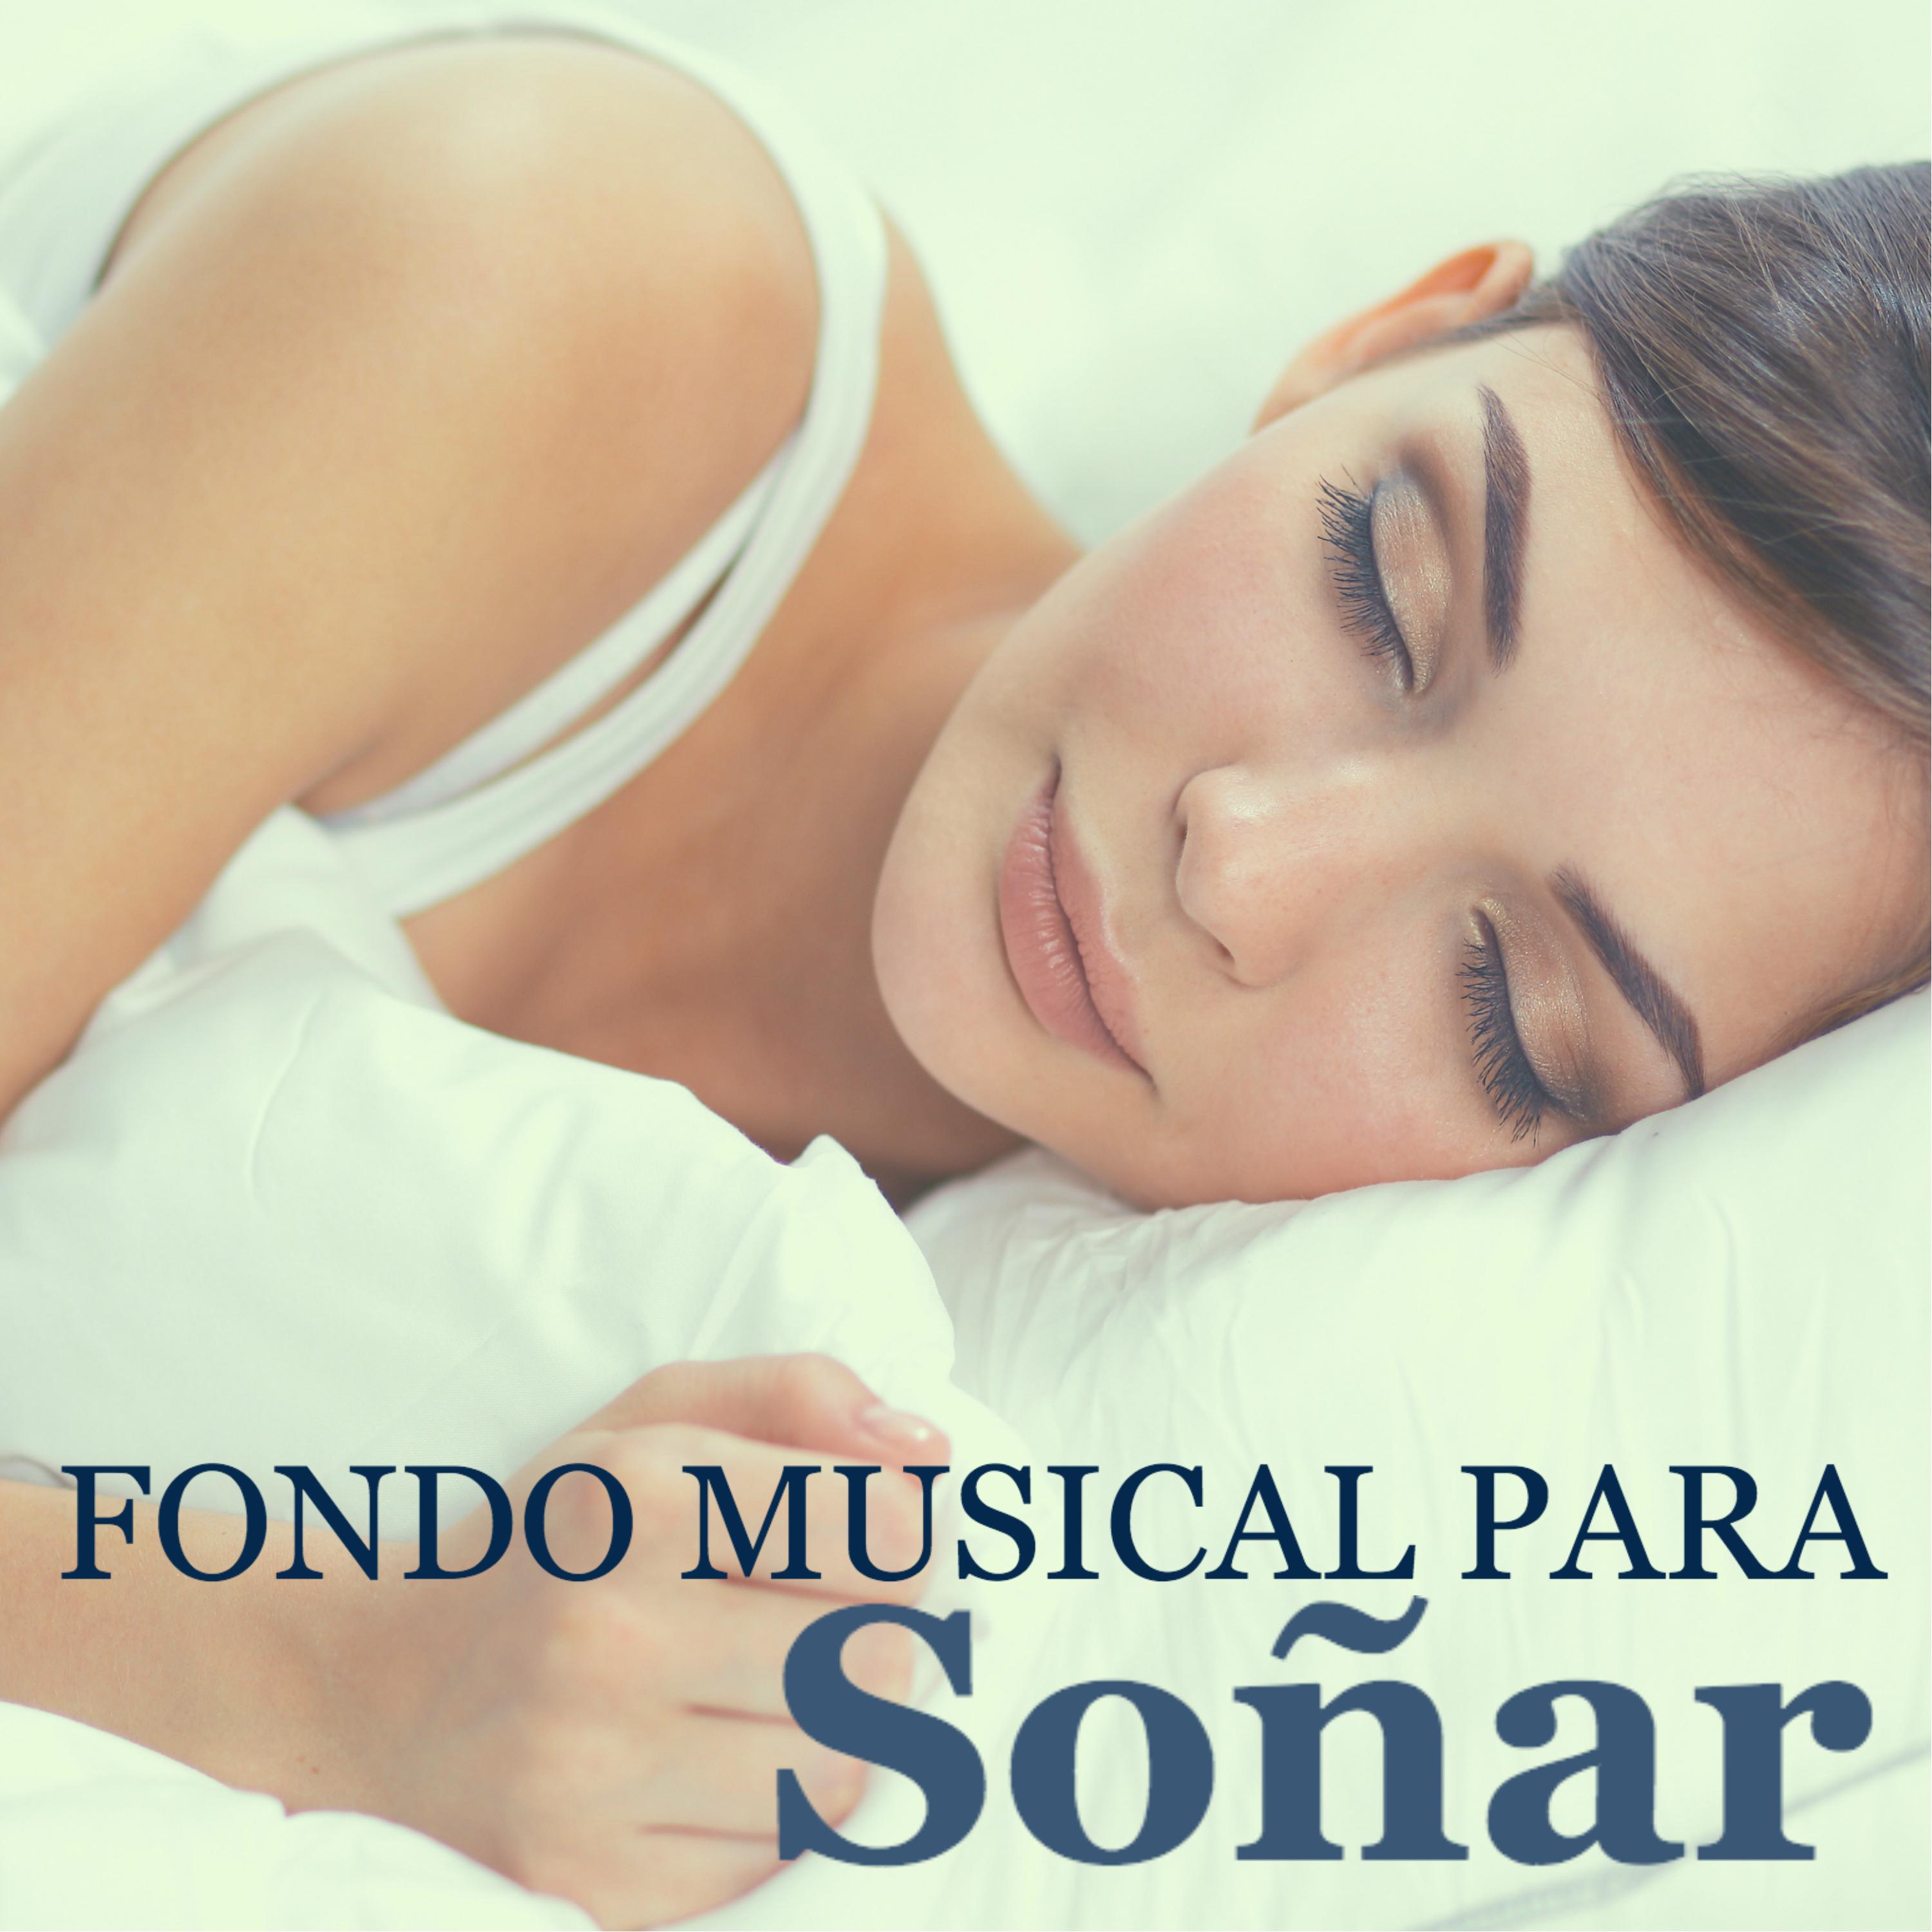 Fondo Musical para Soñar - Delicada Melodía de Fondo para Sueños Lúcidos